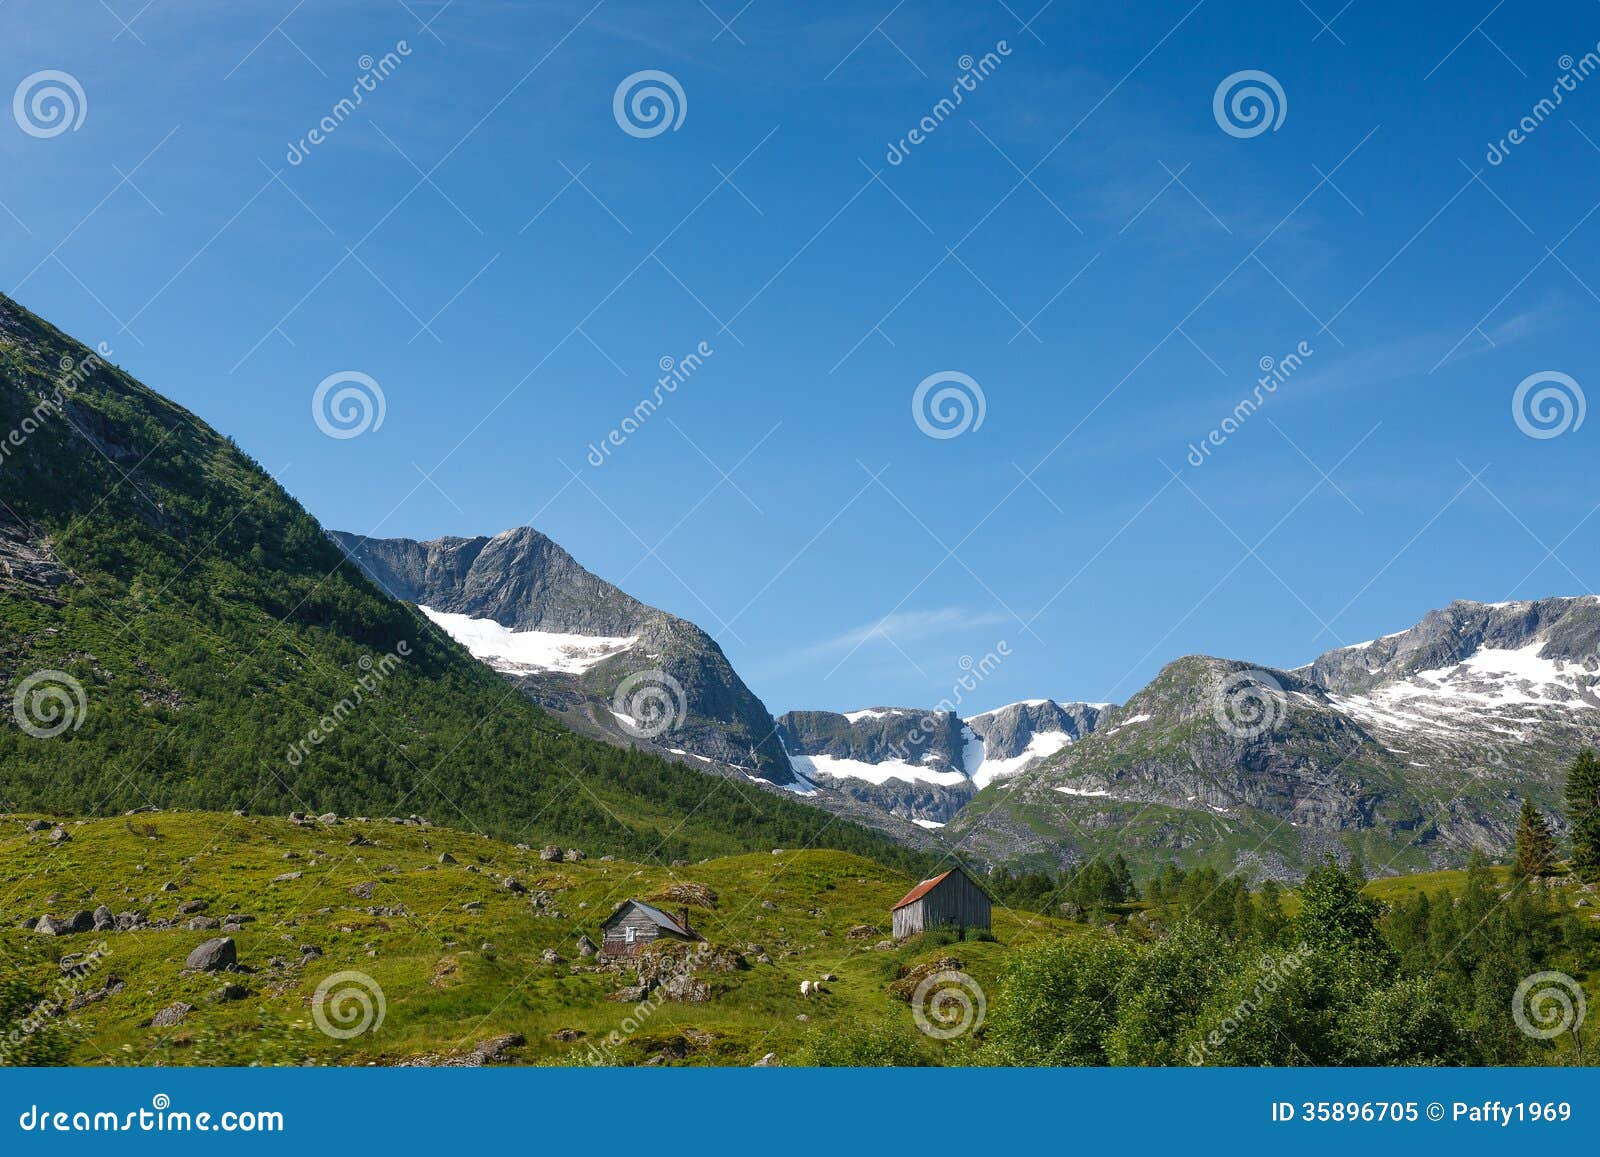 Photo libre de droits: Paysage norvÃ©gien avec des montagnes couvertes ...